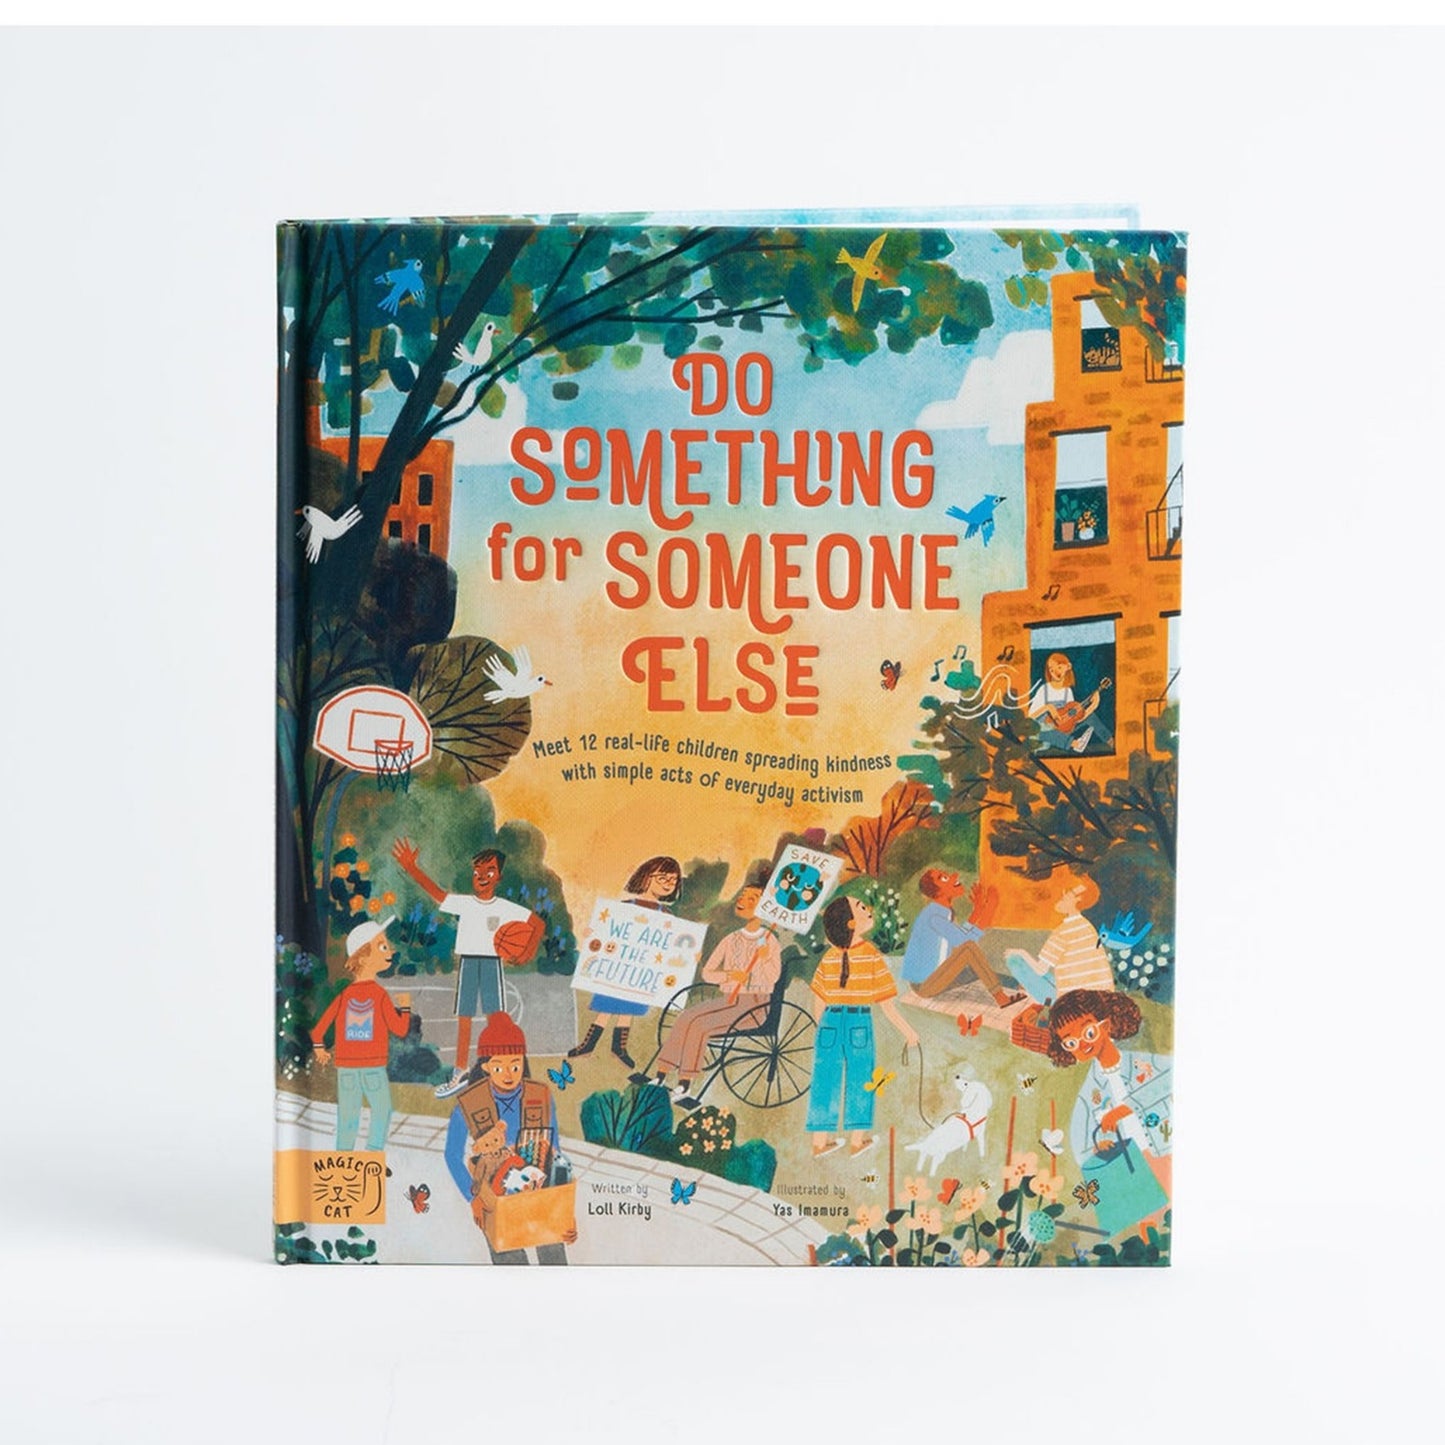 Do Something for Someone Else | Children's Books on Activism